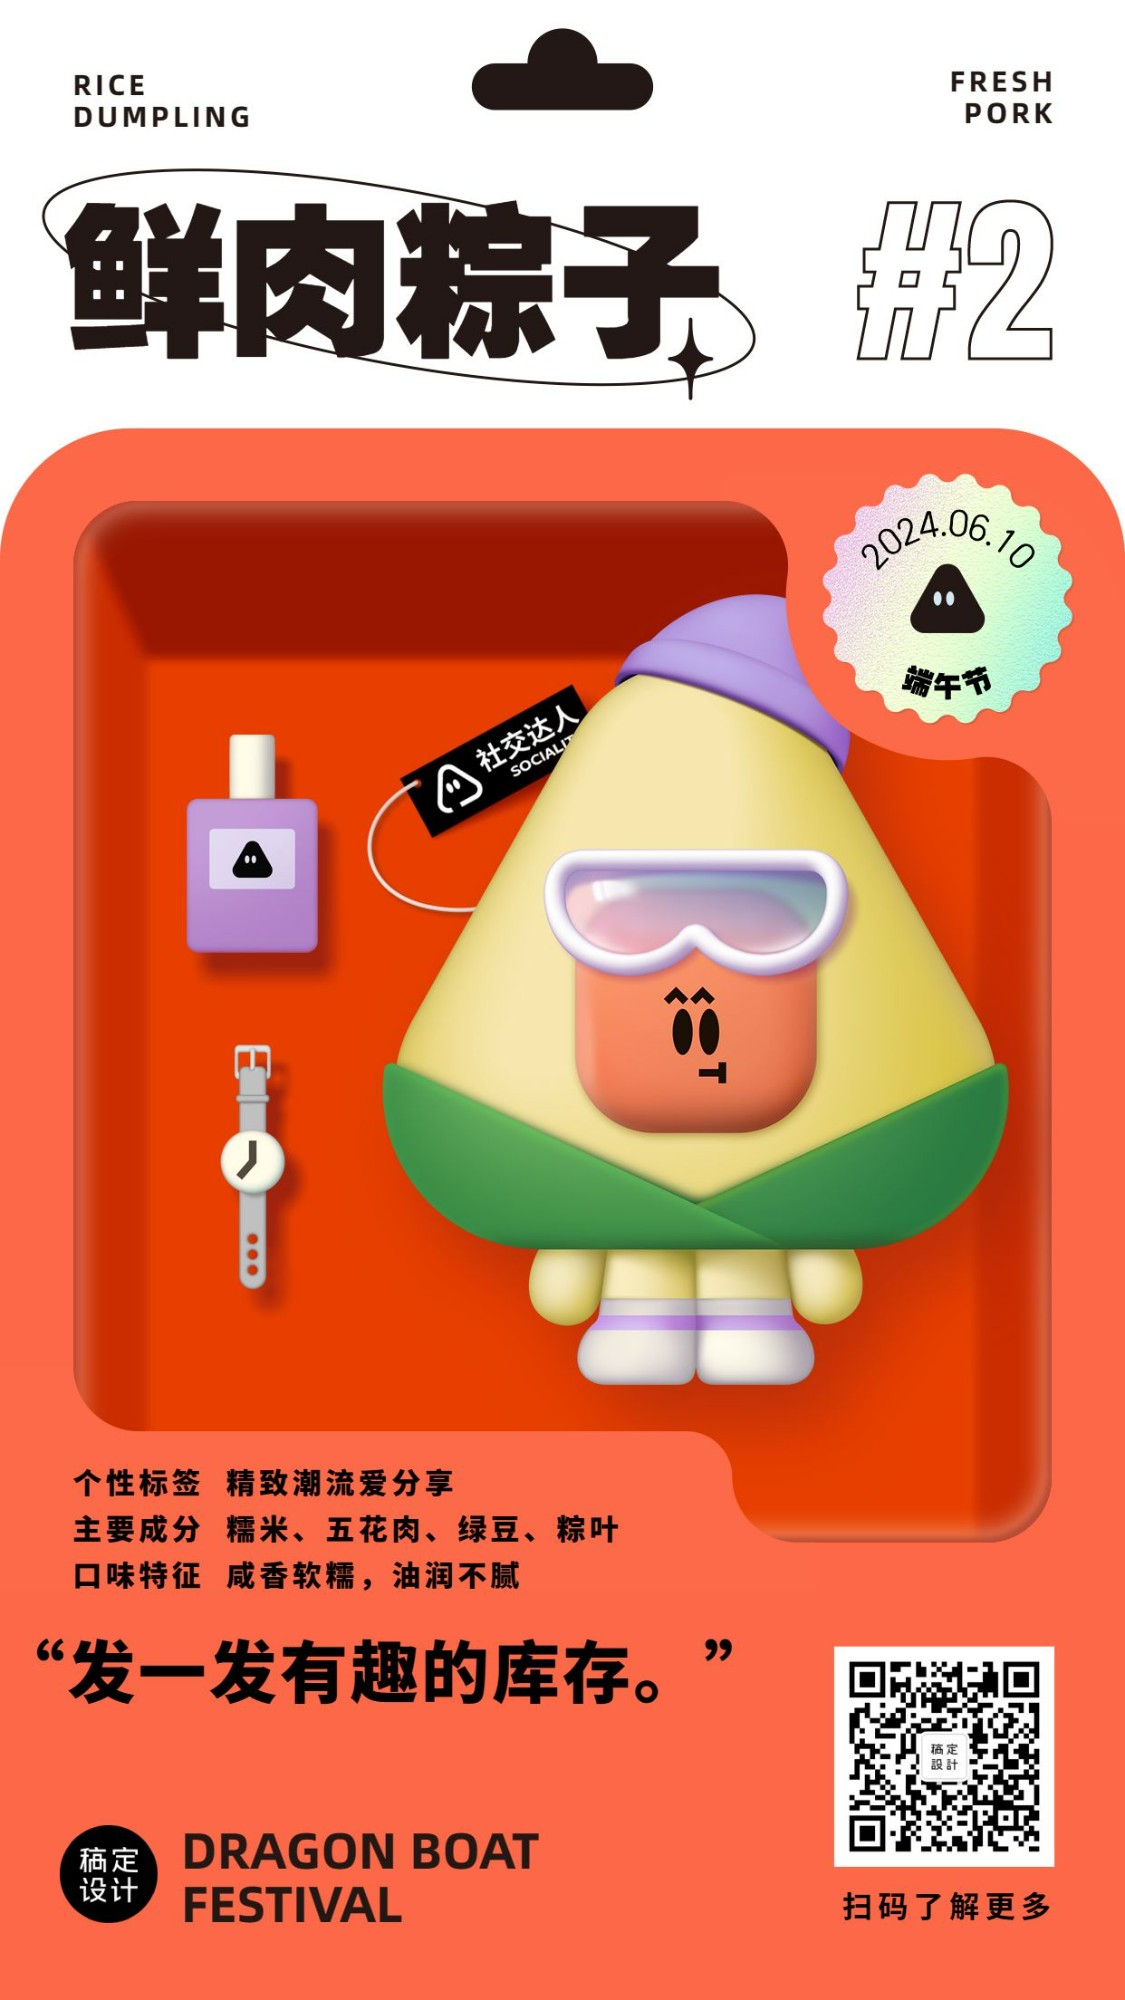 端午节祝福3D粽子IP套系手机海报